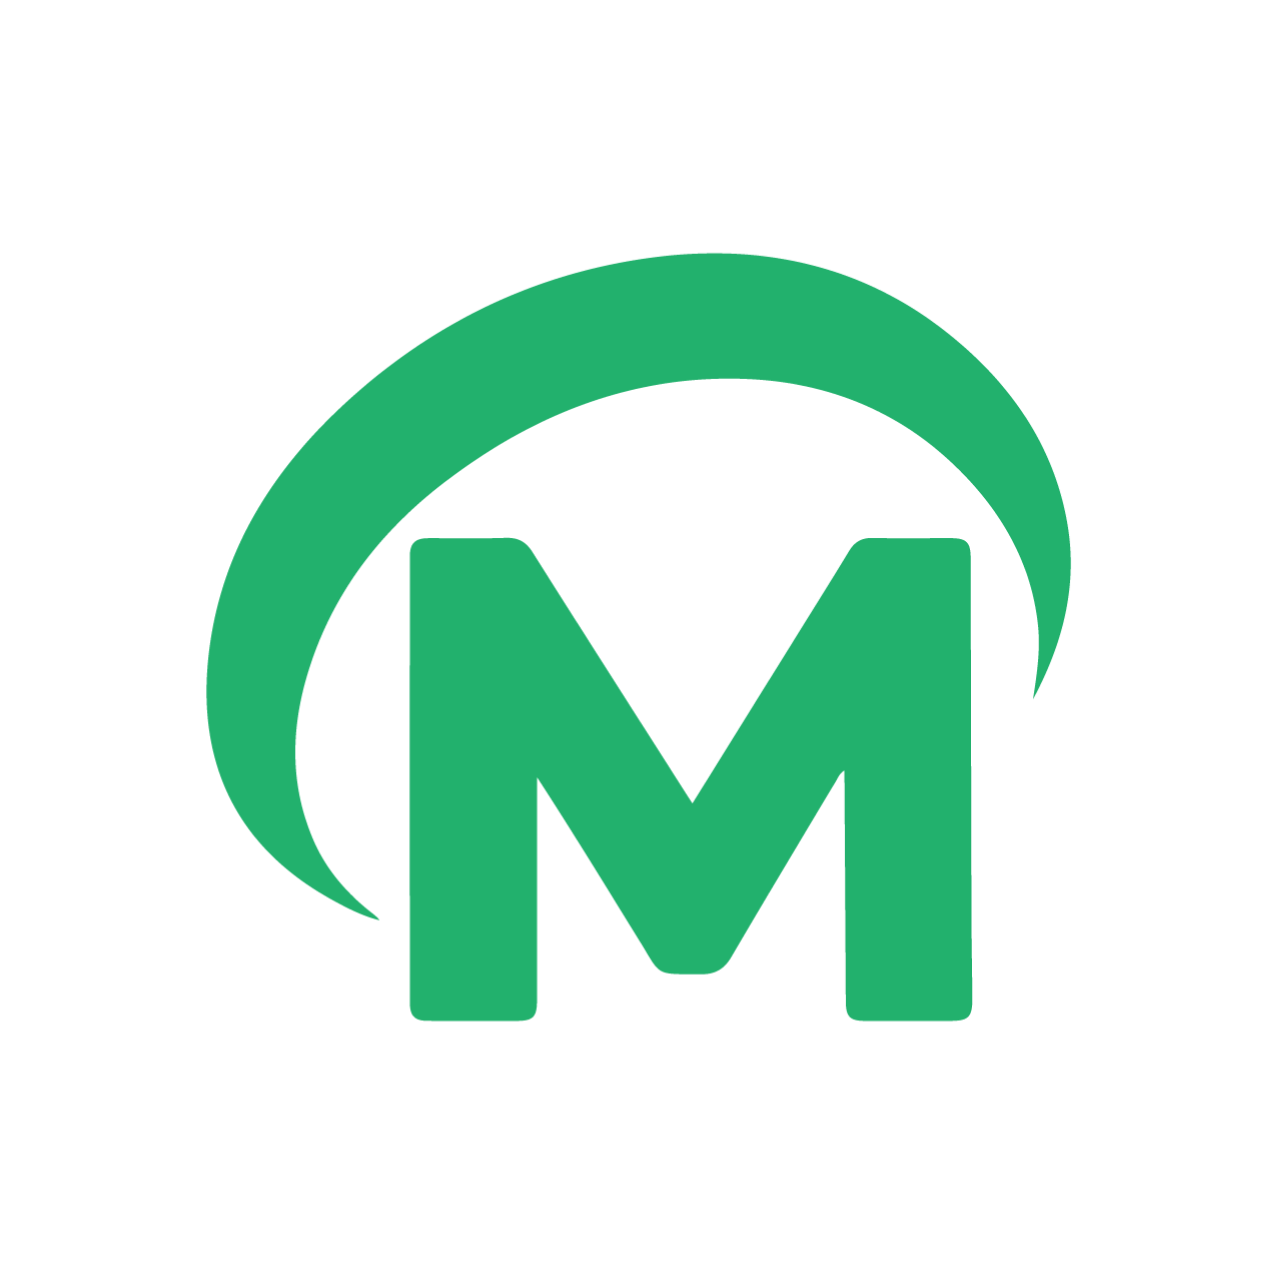 mw4me logo